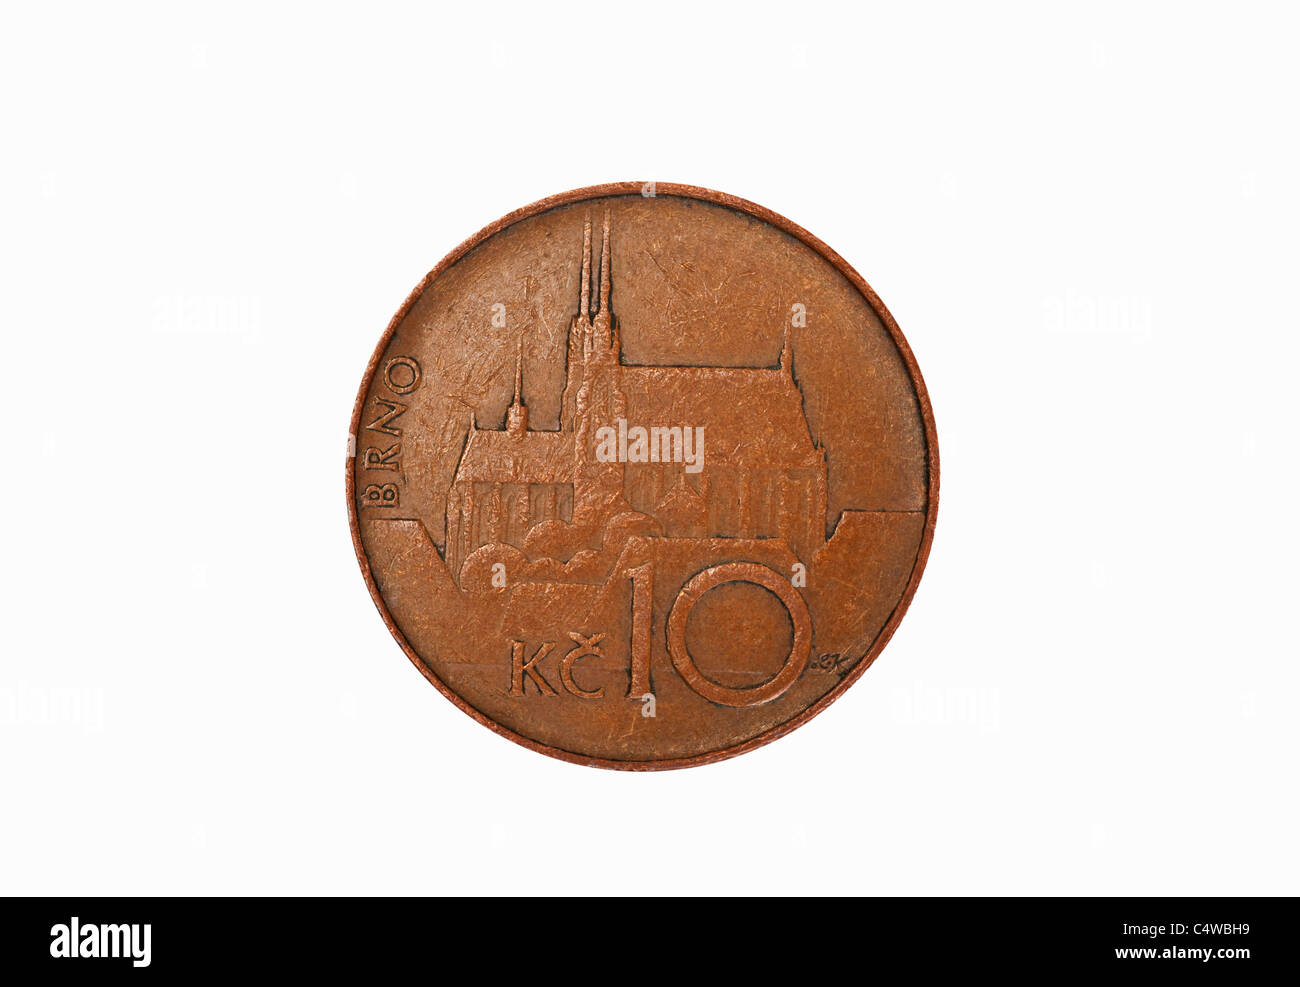 Detailansicht einer tschechischen 10 Kronen Münze | photo détail d'une pièce de monnaie couronne tchèque 10 Banque D'Images